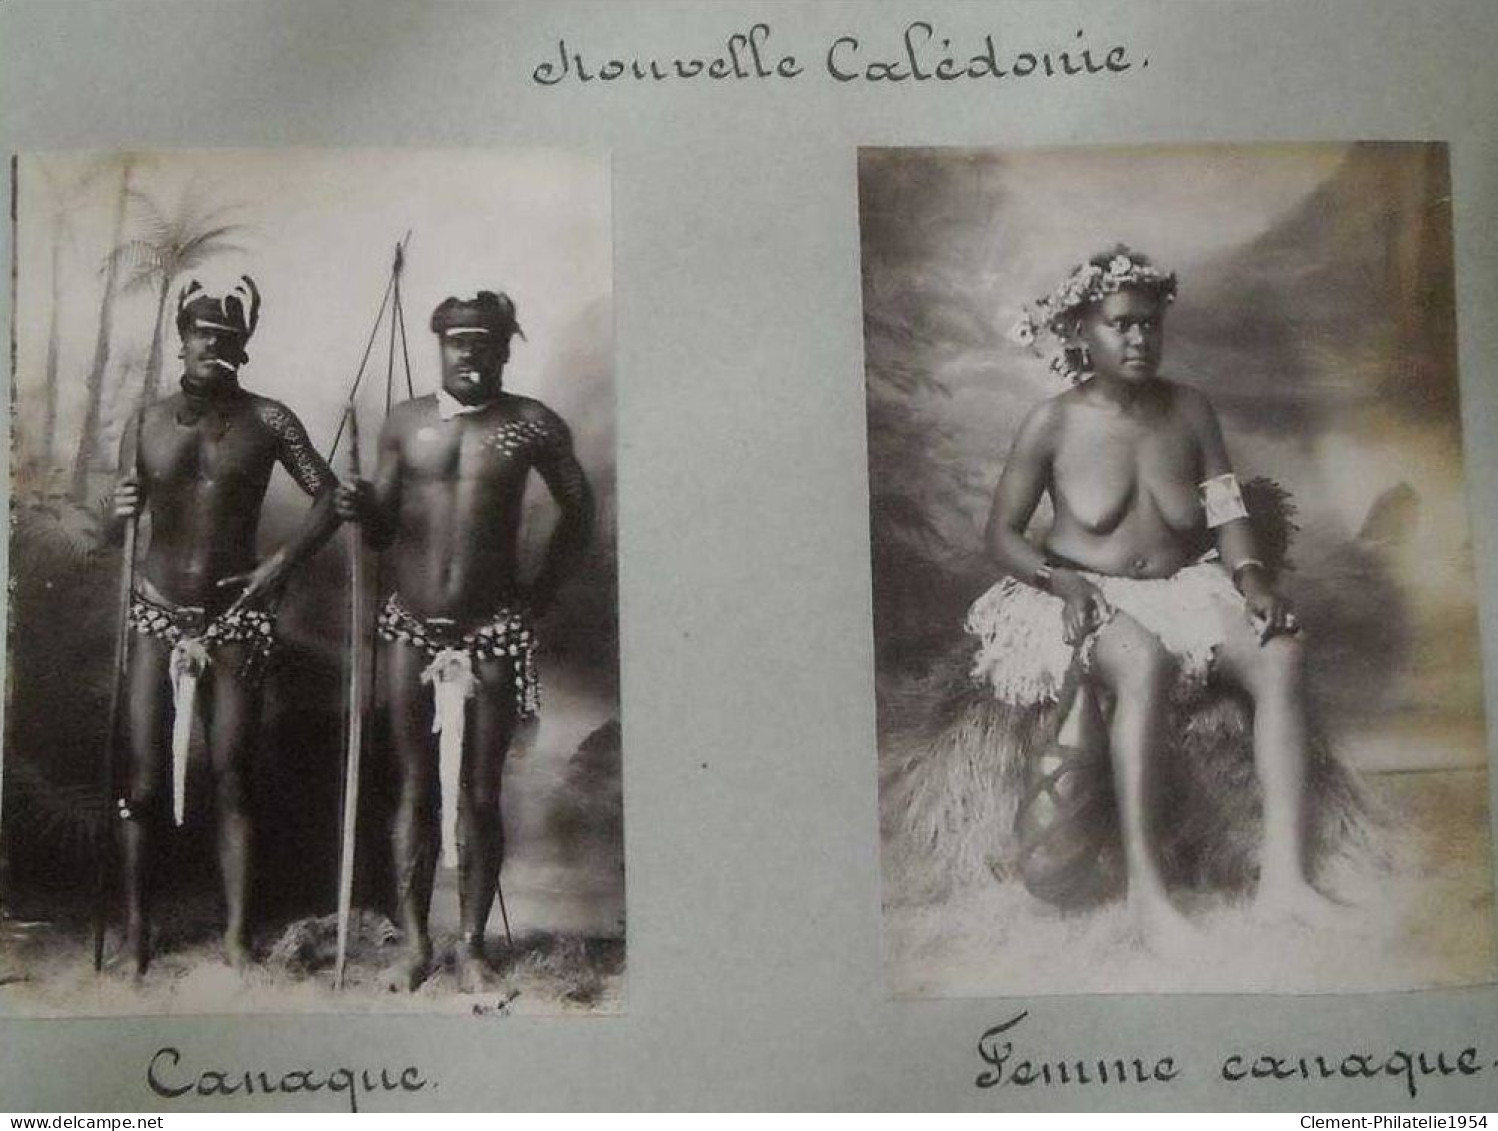 Nouvelle calcedonie ethnique exceptionnel album de photos (environs 100) tres ancien themes rares a voir vraiment